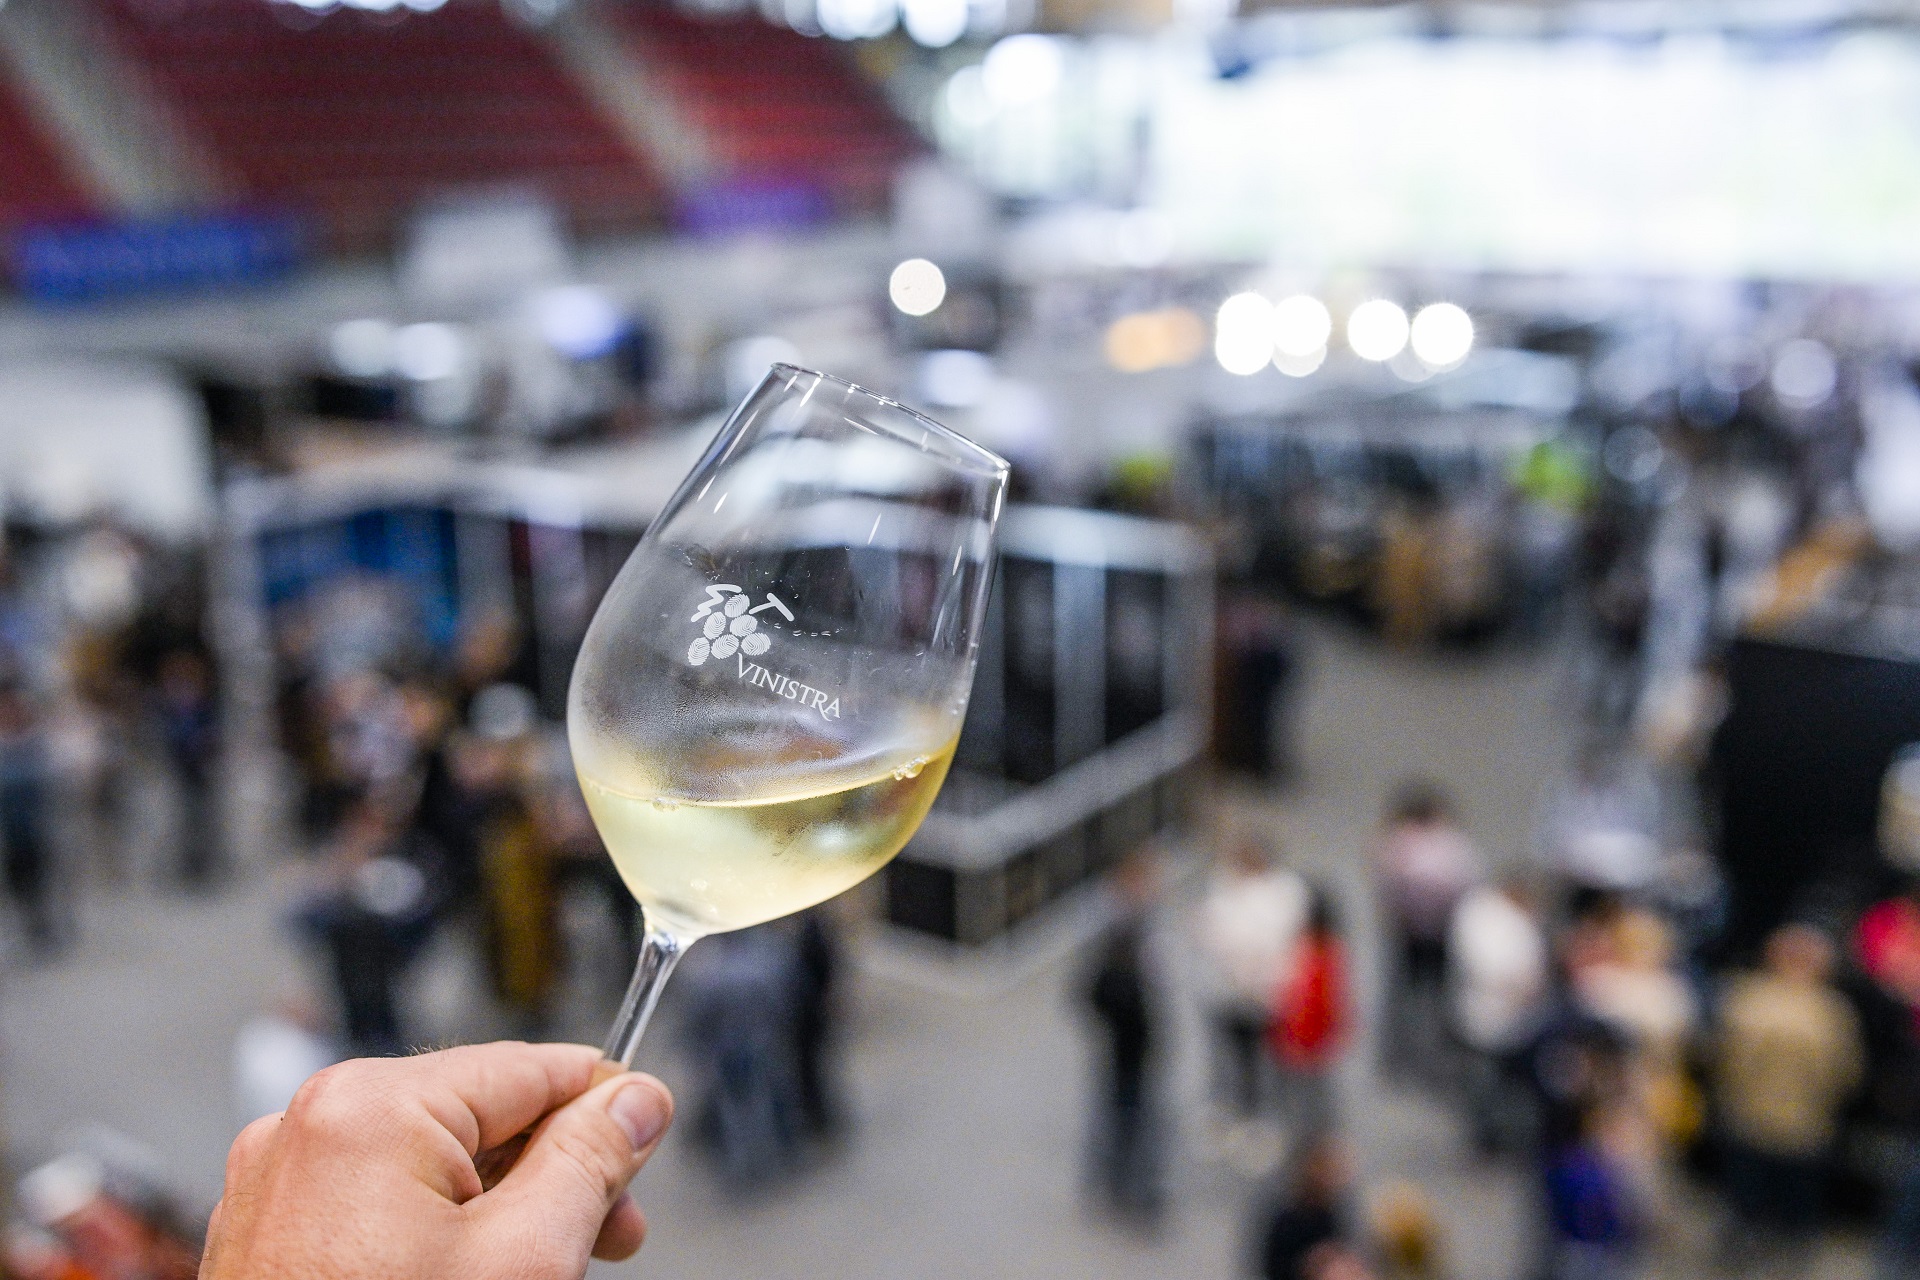 VinIstra 2023 – 29. Internationale Ausstelung von Wein und Weinausstattung 5. bis 7. Mai 2023